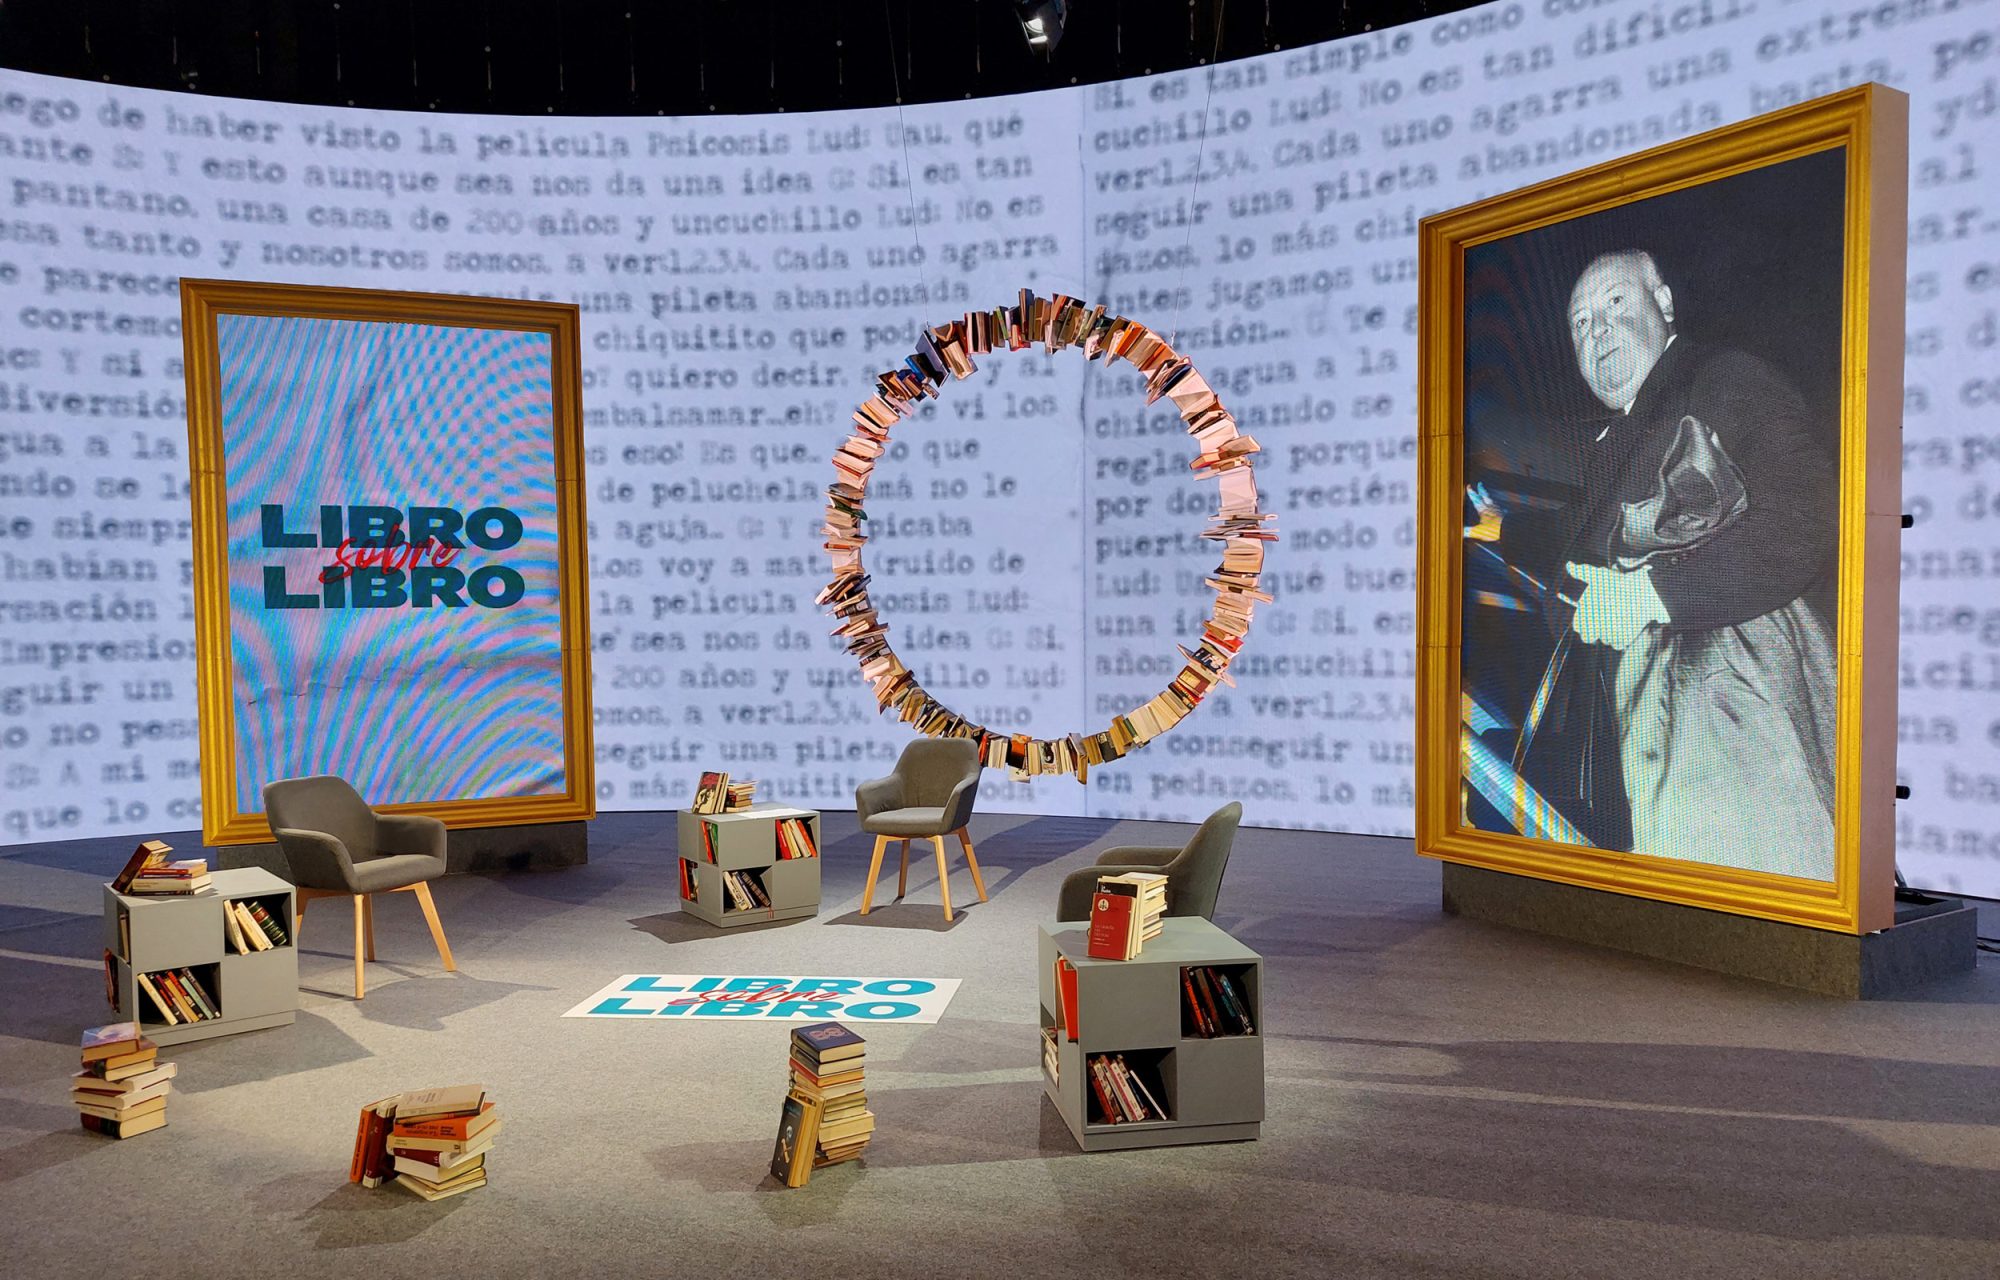 Escenografía para programa LIBRO SOBRE LIBRO producido por Movistar. Diseño escenográfico creado y construido por Colorkreis